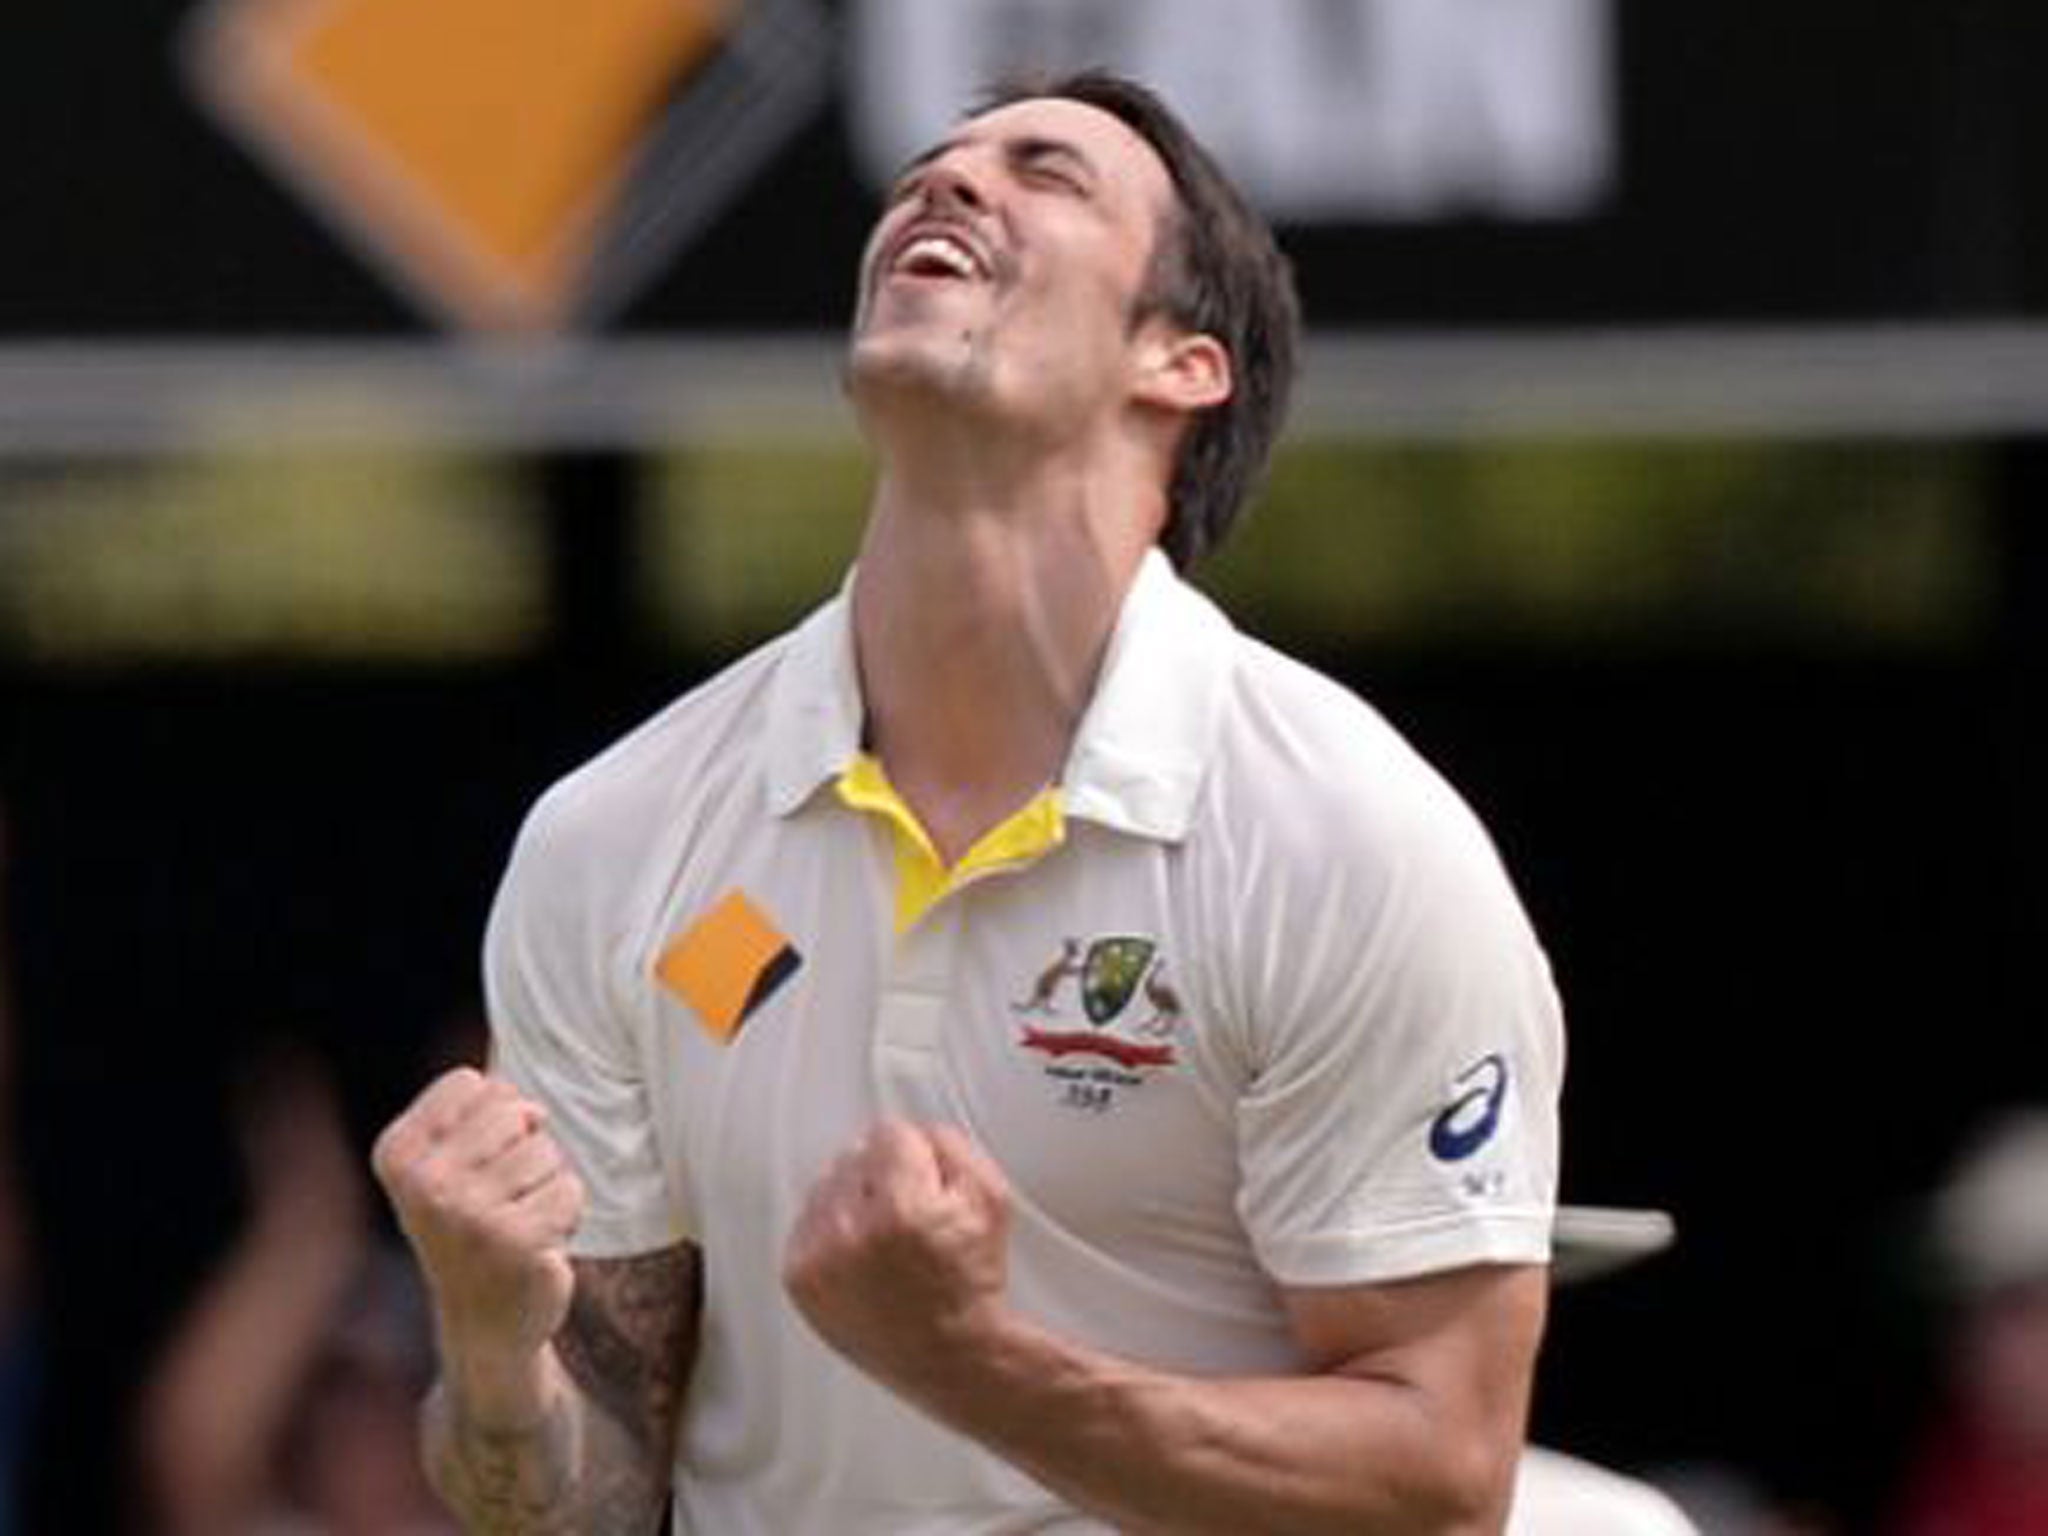 Australia's Mitchell Johnson celebrates taking the wicket of England's Graeme Swann for 0